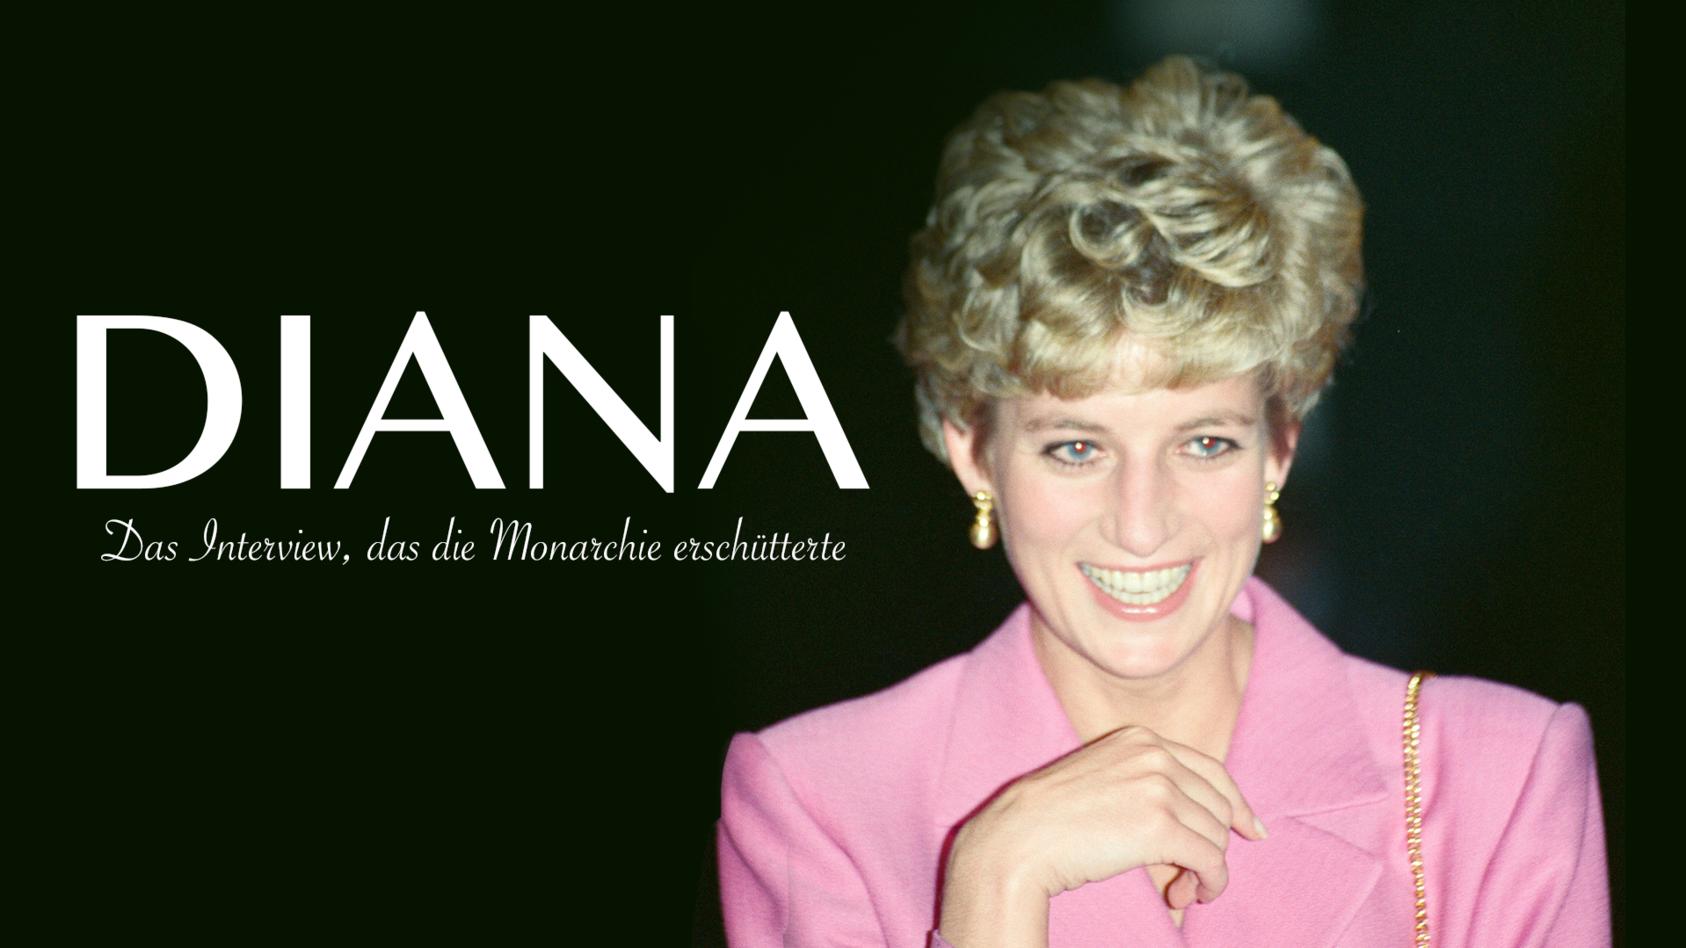 Auf TVNOW gibt’s die Dokumentation rund um das schockierende Gespräch mit Prinzessin Diana ab sofort zum Streamen.